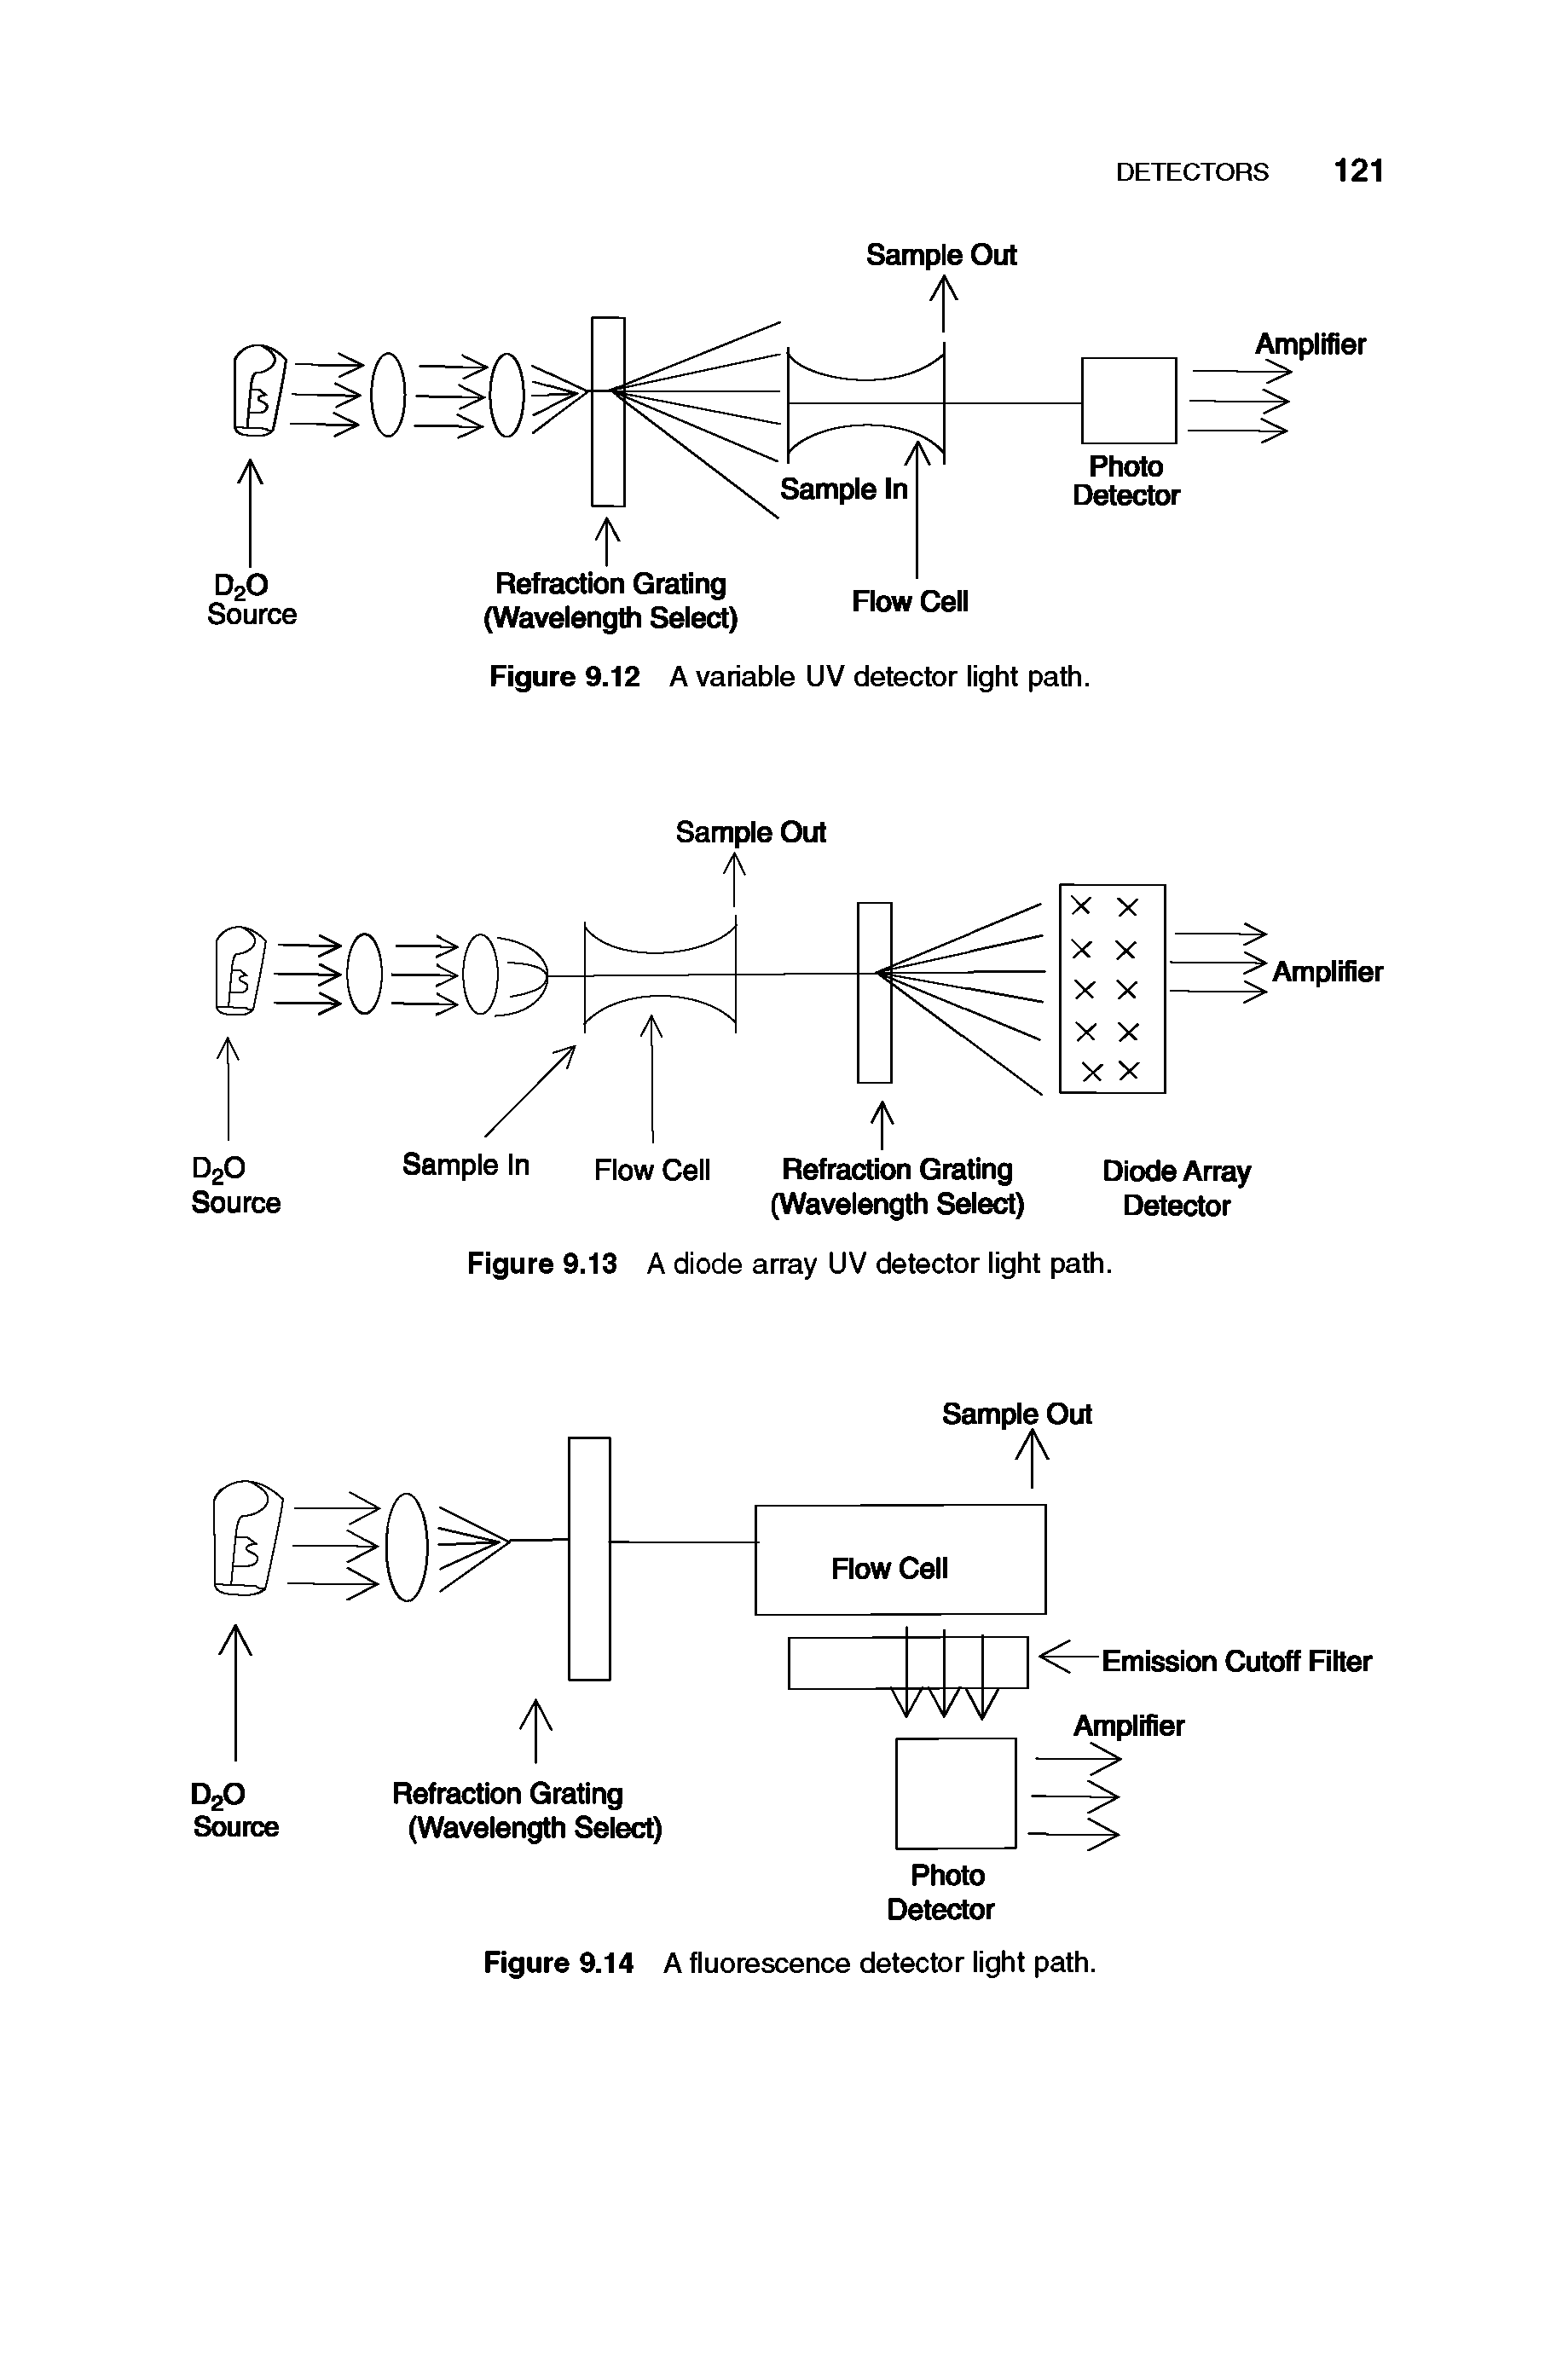 Figure 9.13 A diode array UV detector light path.